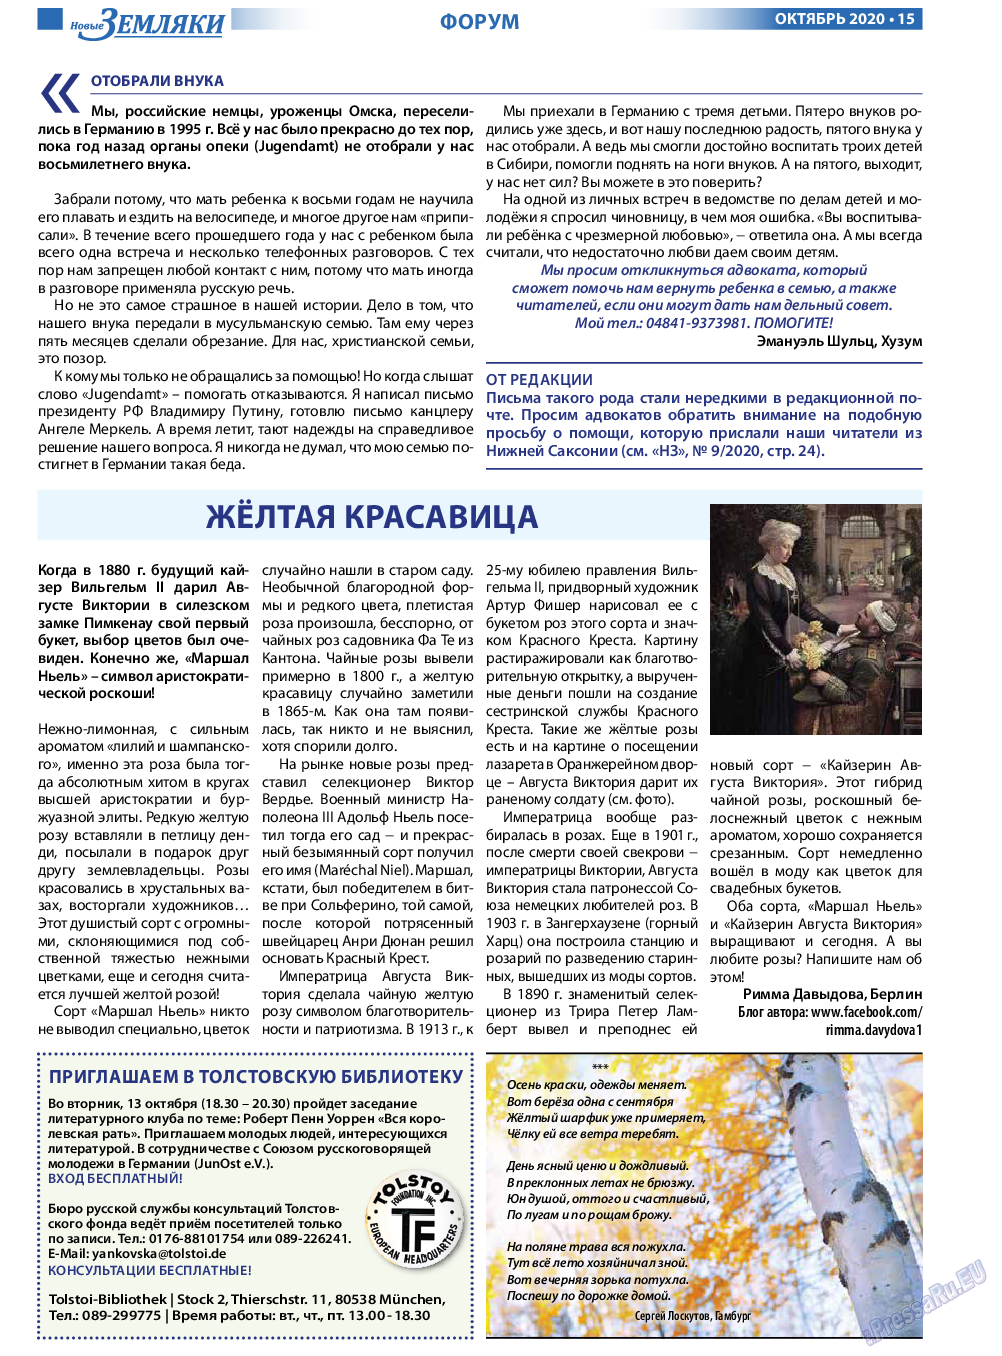 Новые Земляки, газета. 2020 №10 стр.15